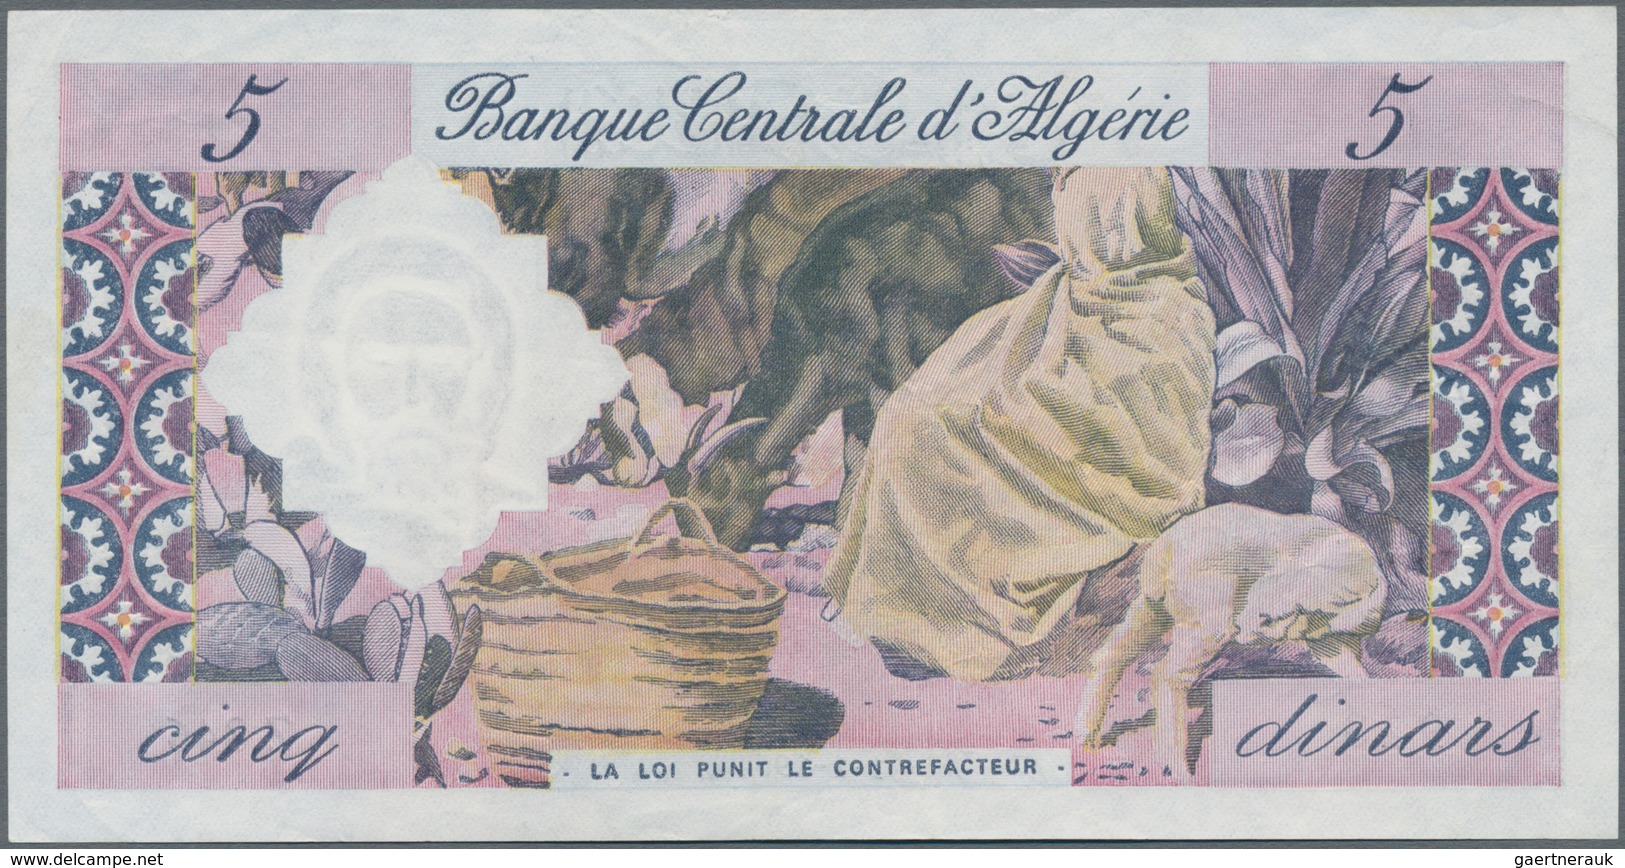 Algeria / Algerien: Banque Centrale D'Algérie 5 Dinars 1964, P.122, Without Pinholes, Just Some Fold - Algerien